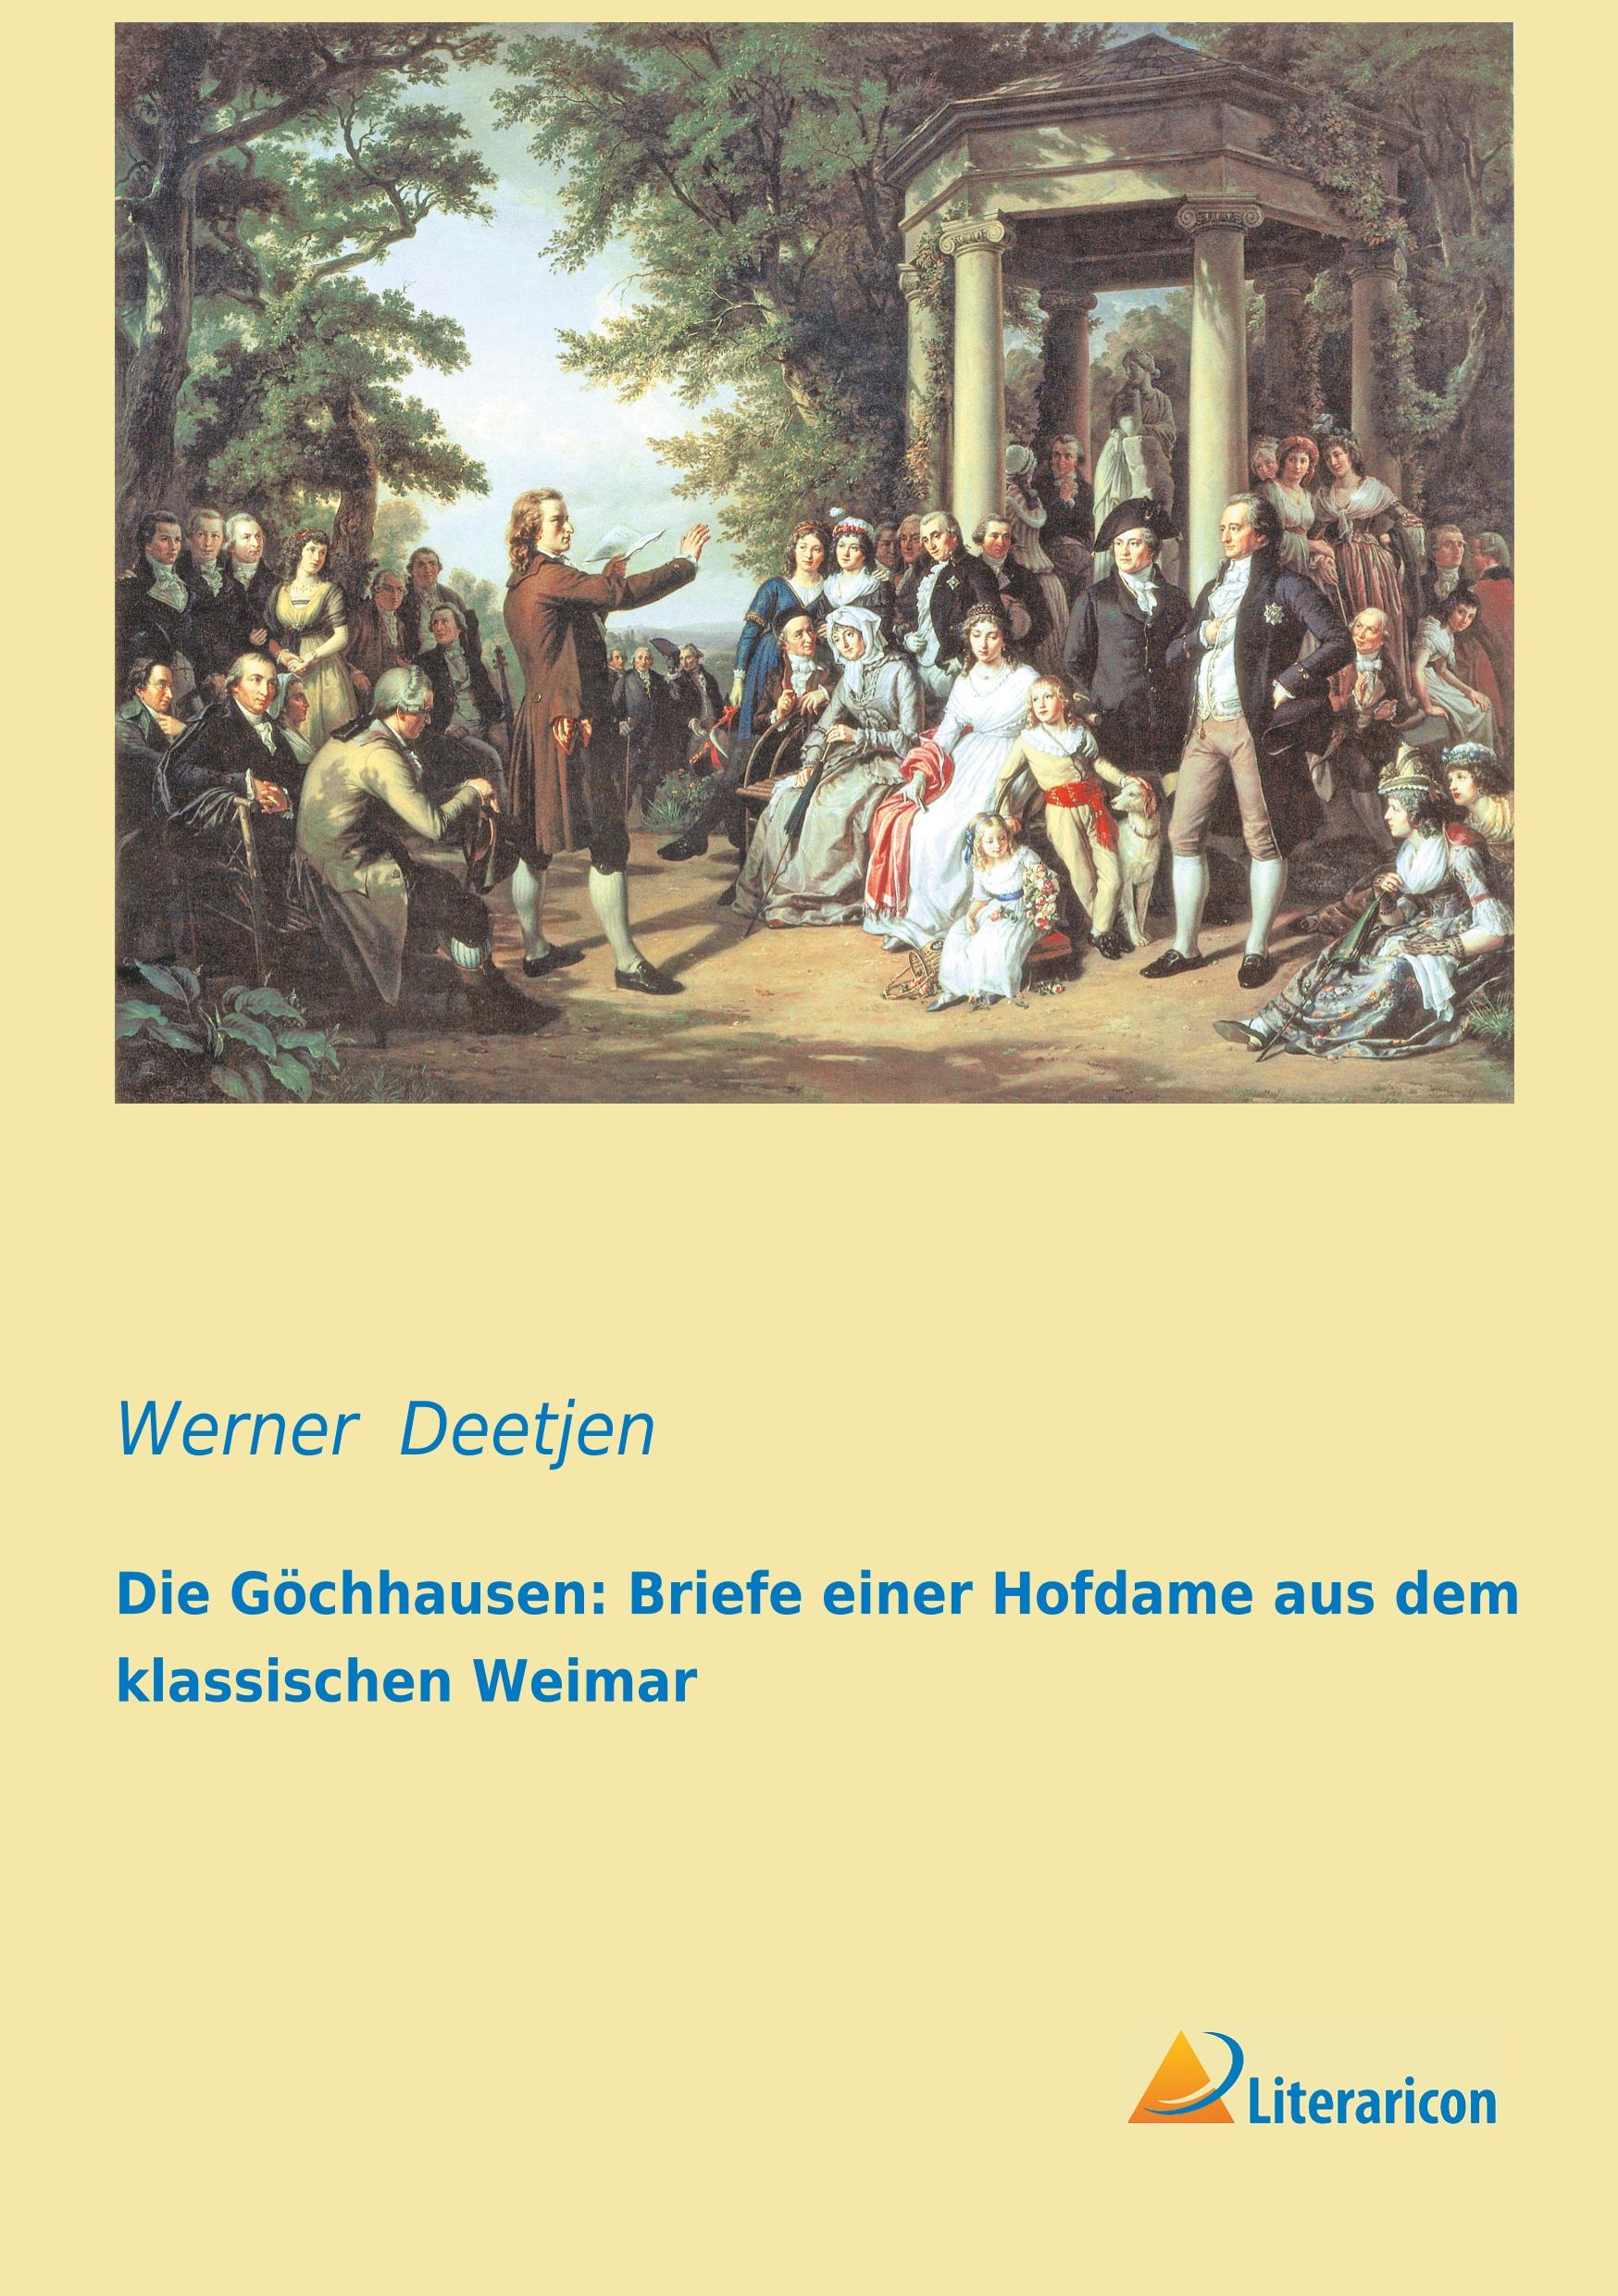 Die Göchhausen: Briefe einer Hofdame aus dem klassischen Weimar | Werner Deetjen | Taschenbuch | Paperback | 204 S. | Deutsch | 2019 | Literaricon Verlag | EAN 9783956970146 - Deetjen, Werner